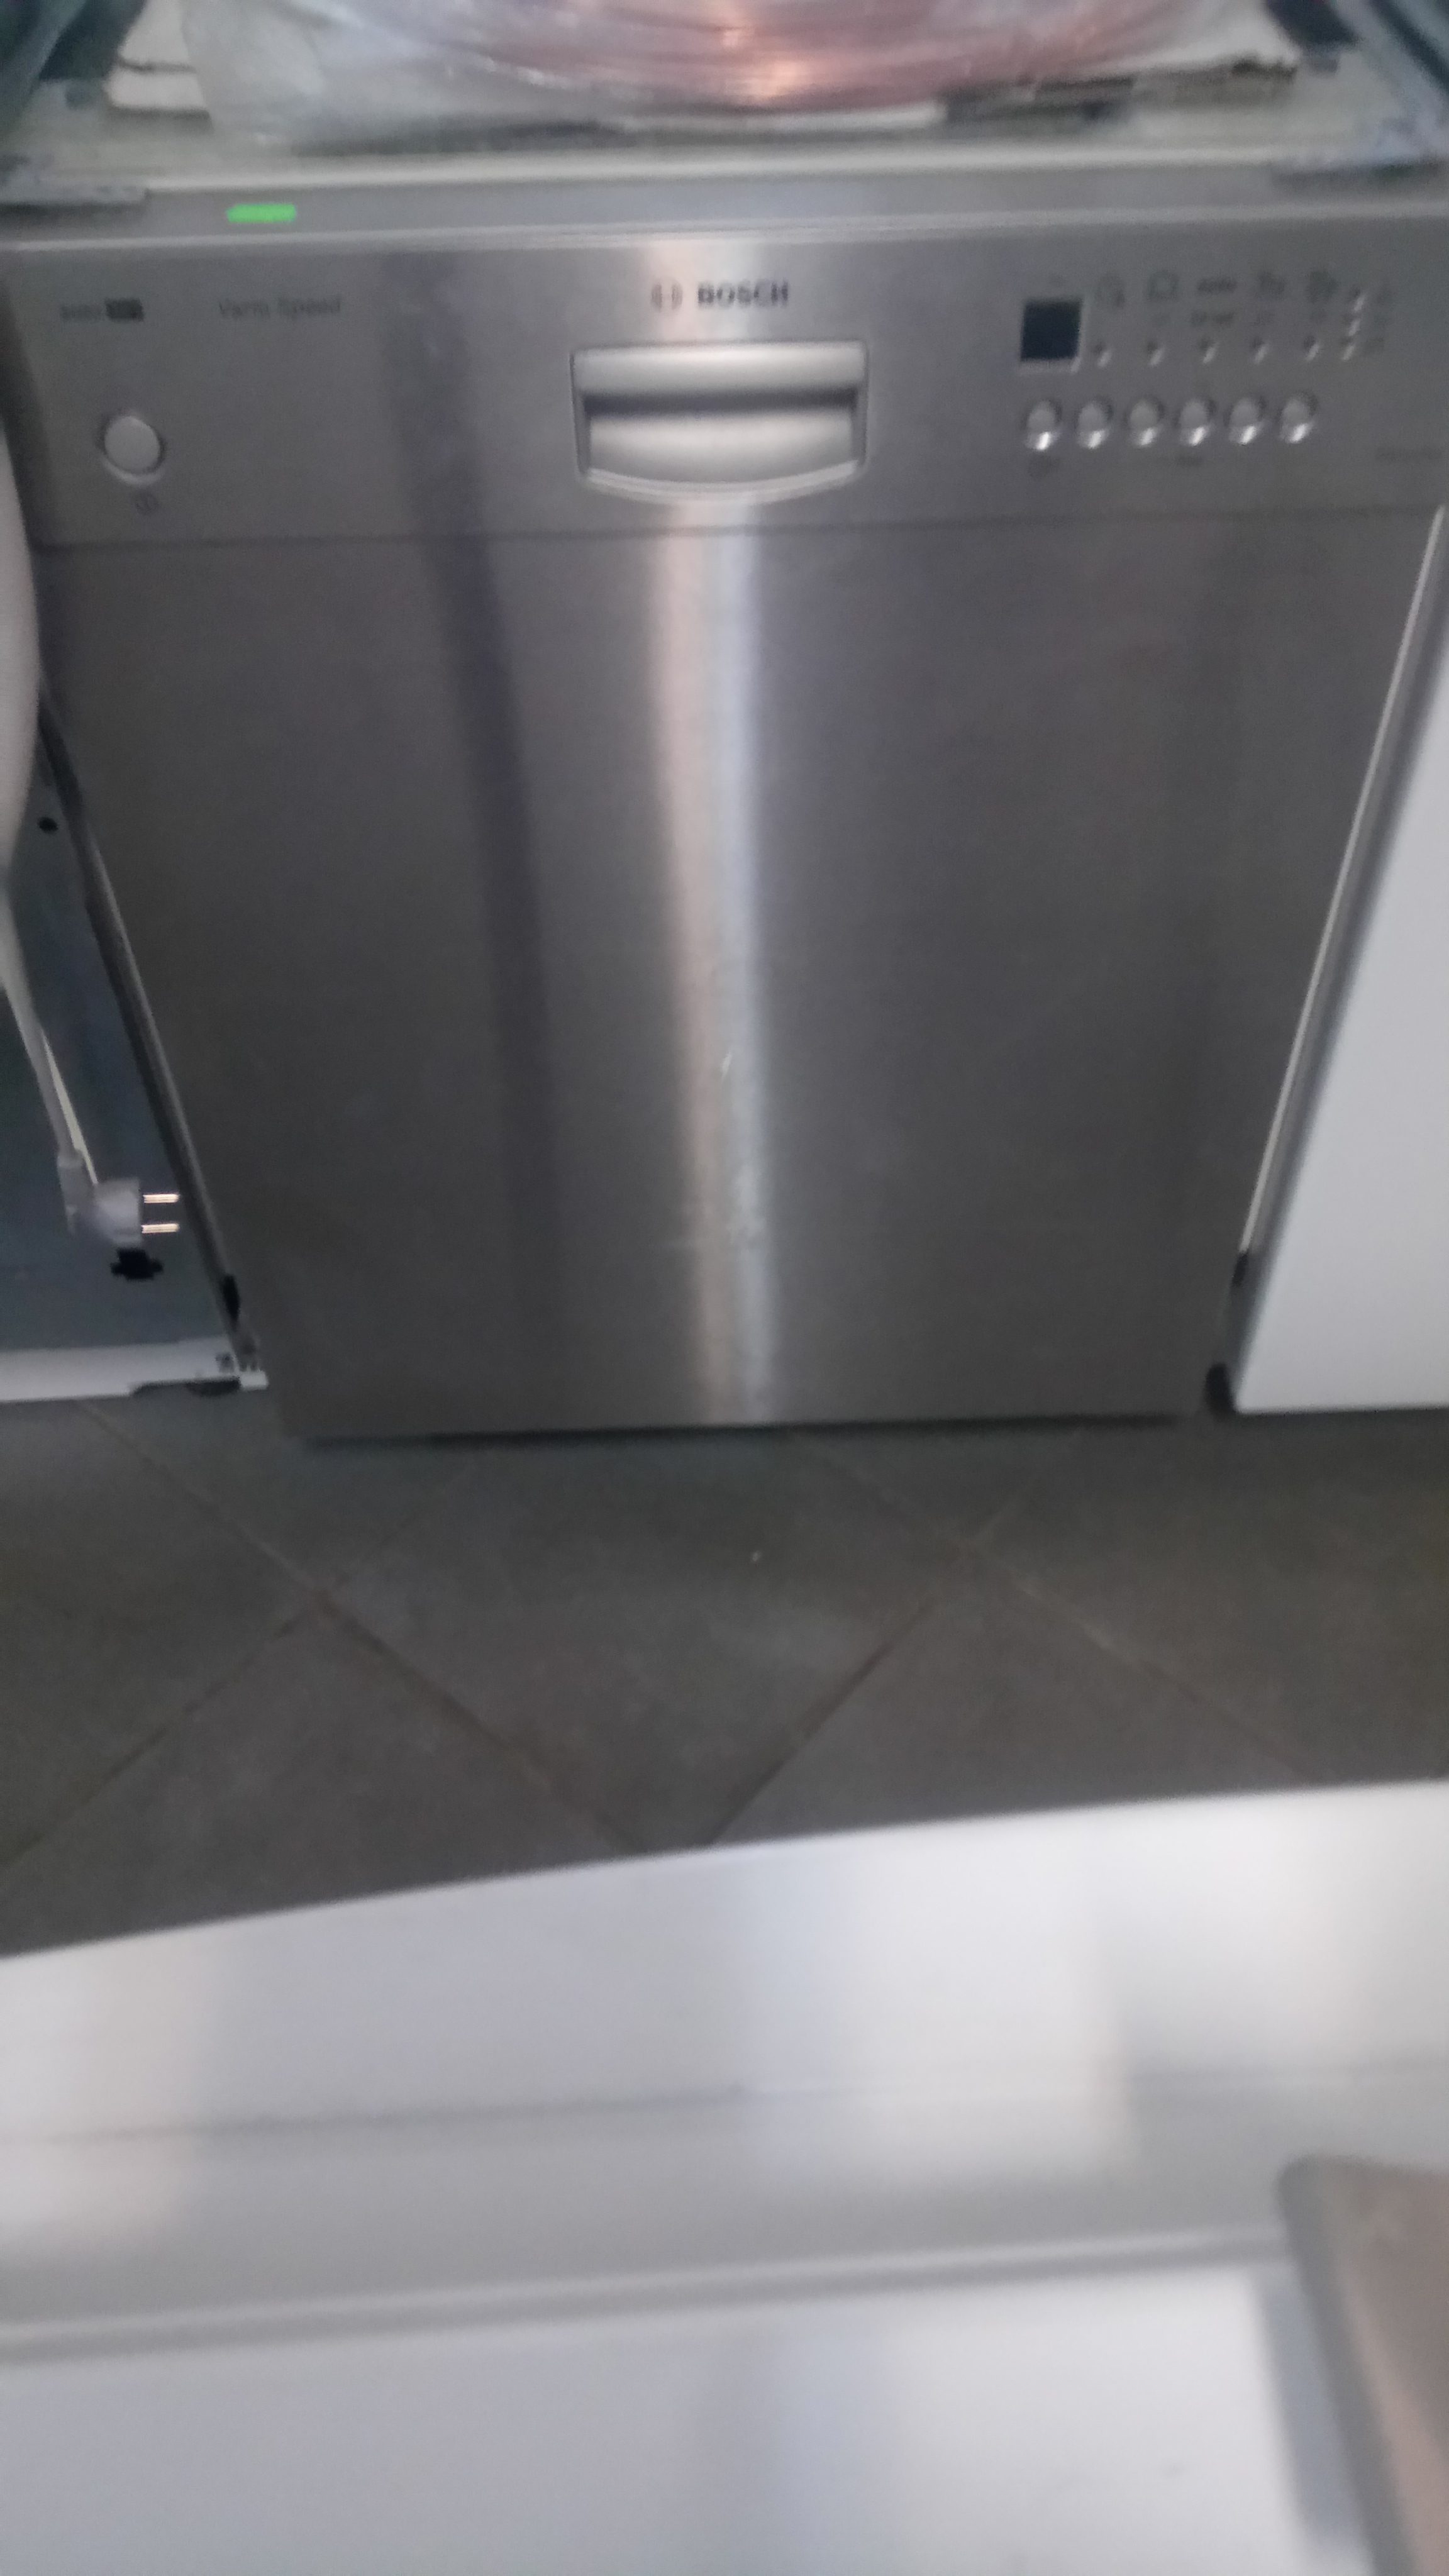 Посудомоечная машина BOSCH серая, серебристая ширина 60см длина 60см Стиральные, посудомоечные и сушильные машины